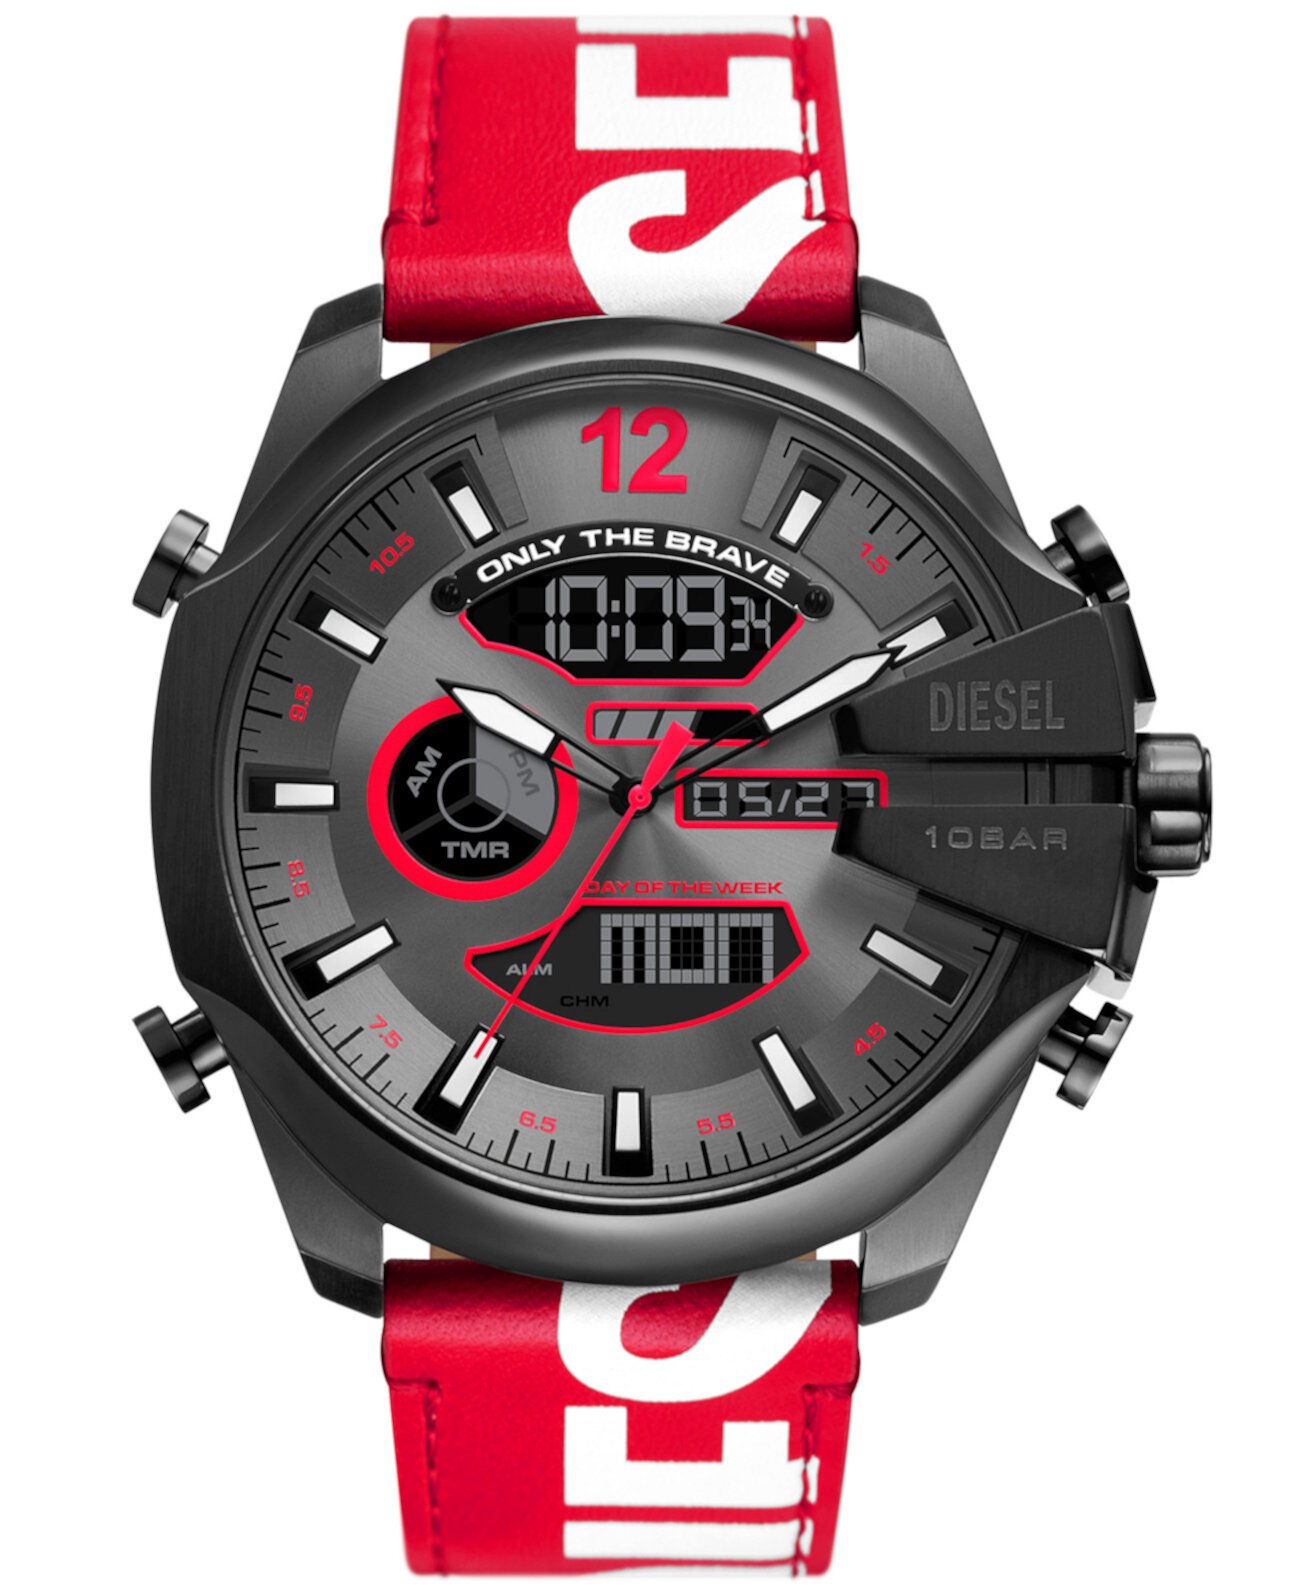 Мужские часы Mega Chief Digital красные кожаные 51 мм Diesel